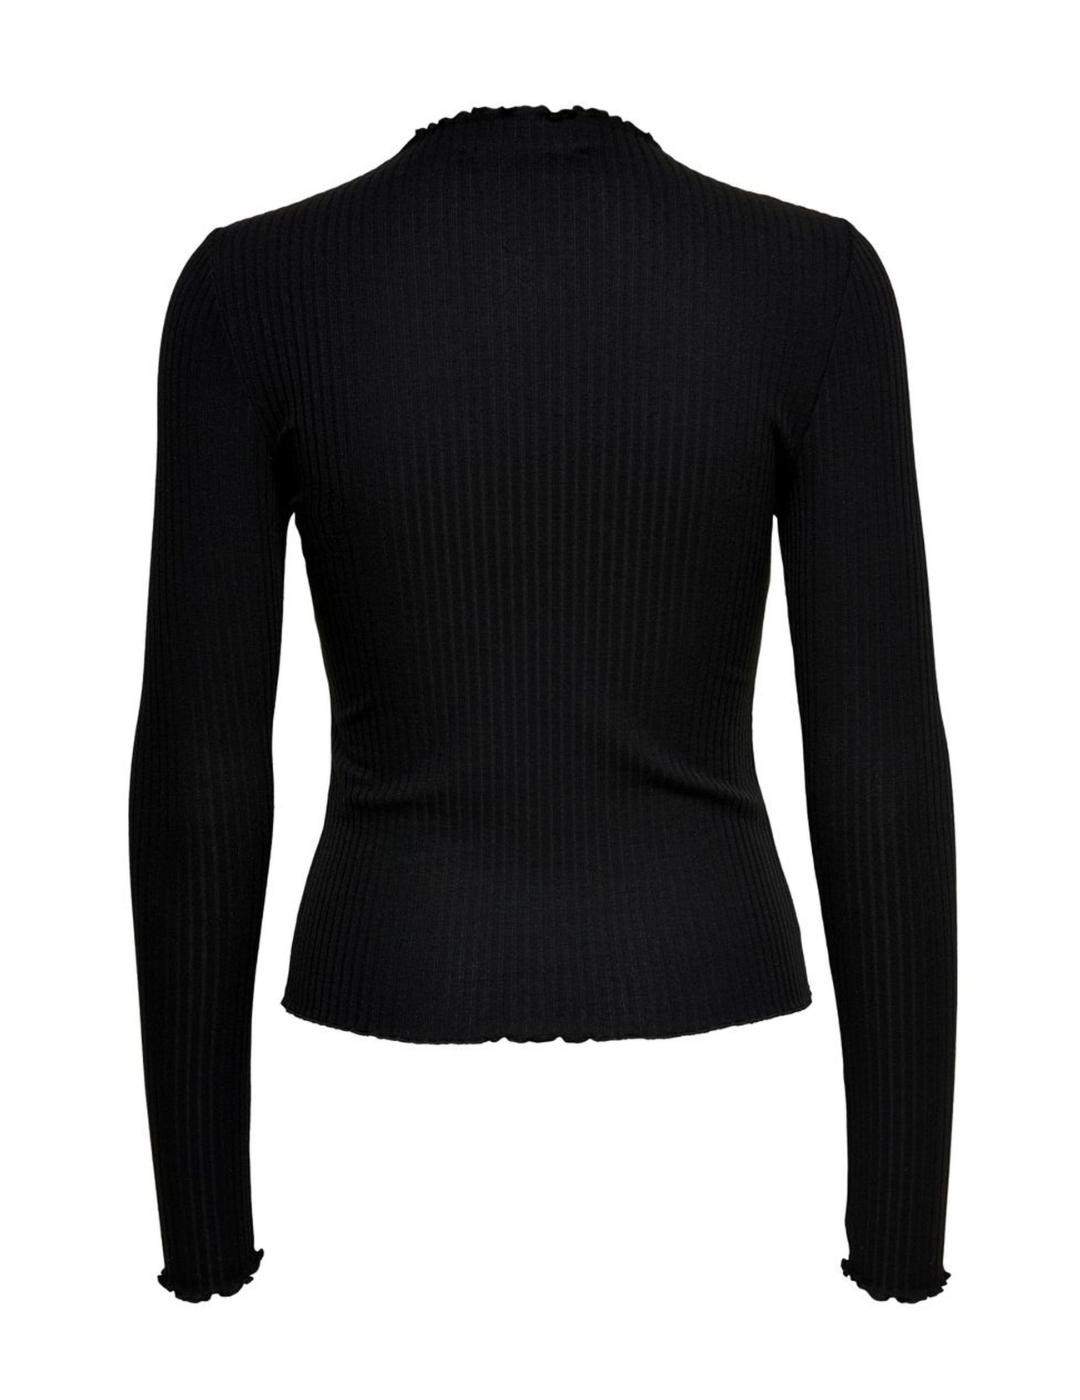 Camiseta Only Emma de canalé negra manga larga para mujer